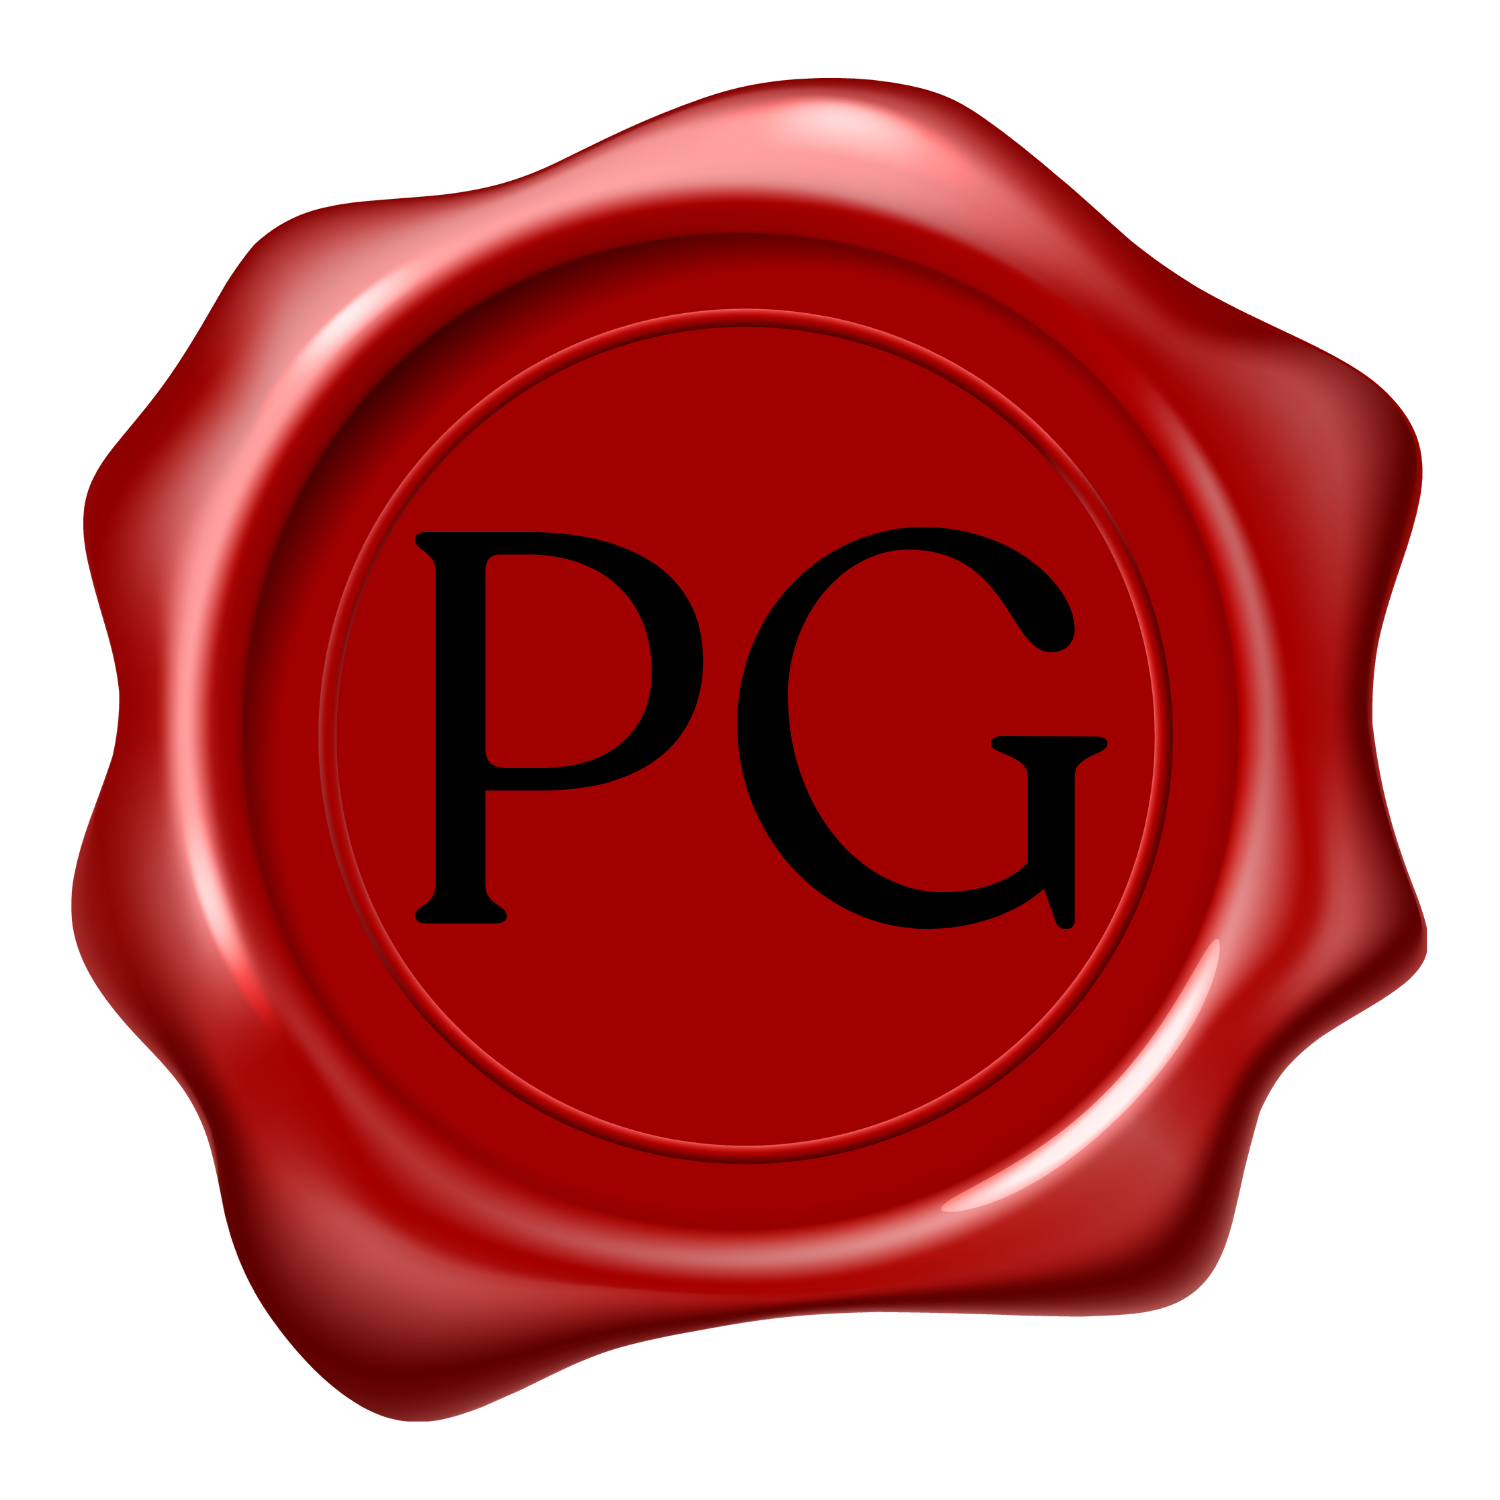 File:TV-PG icon.svg - Wikipedia